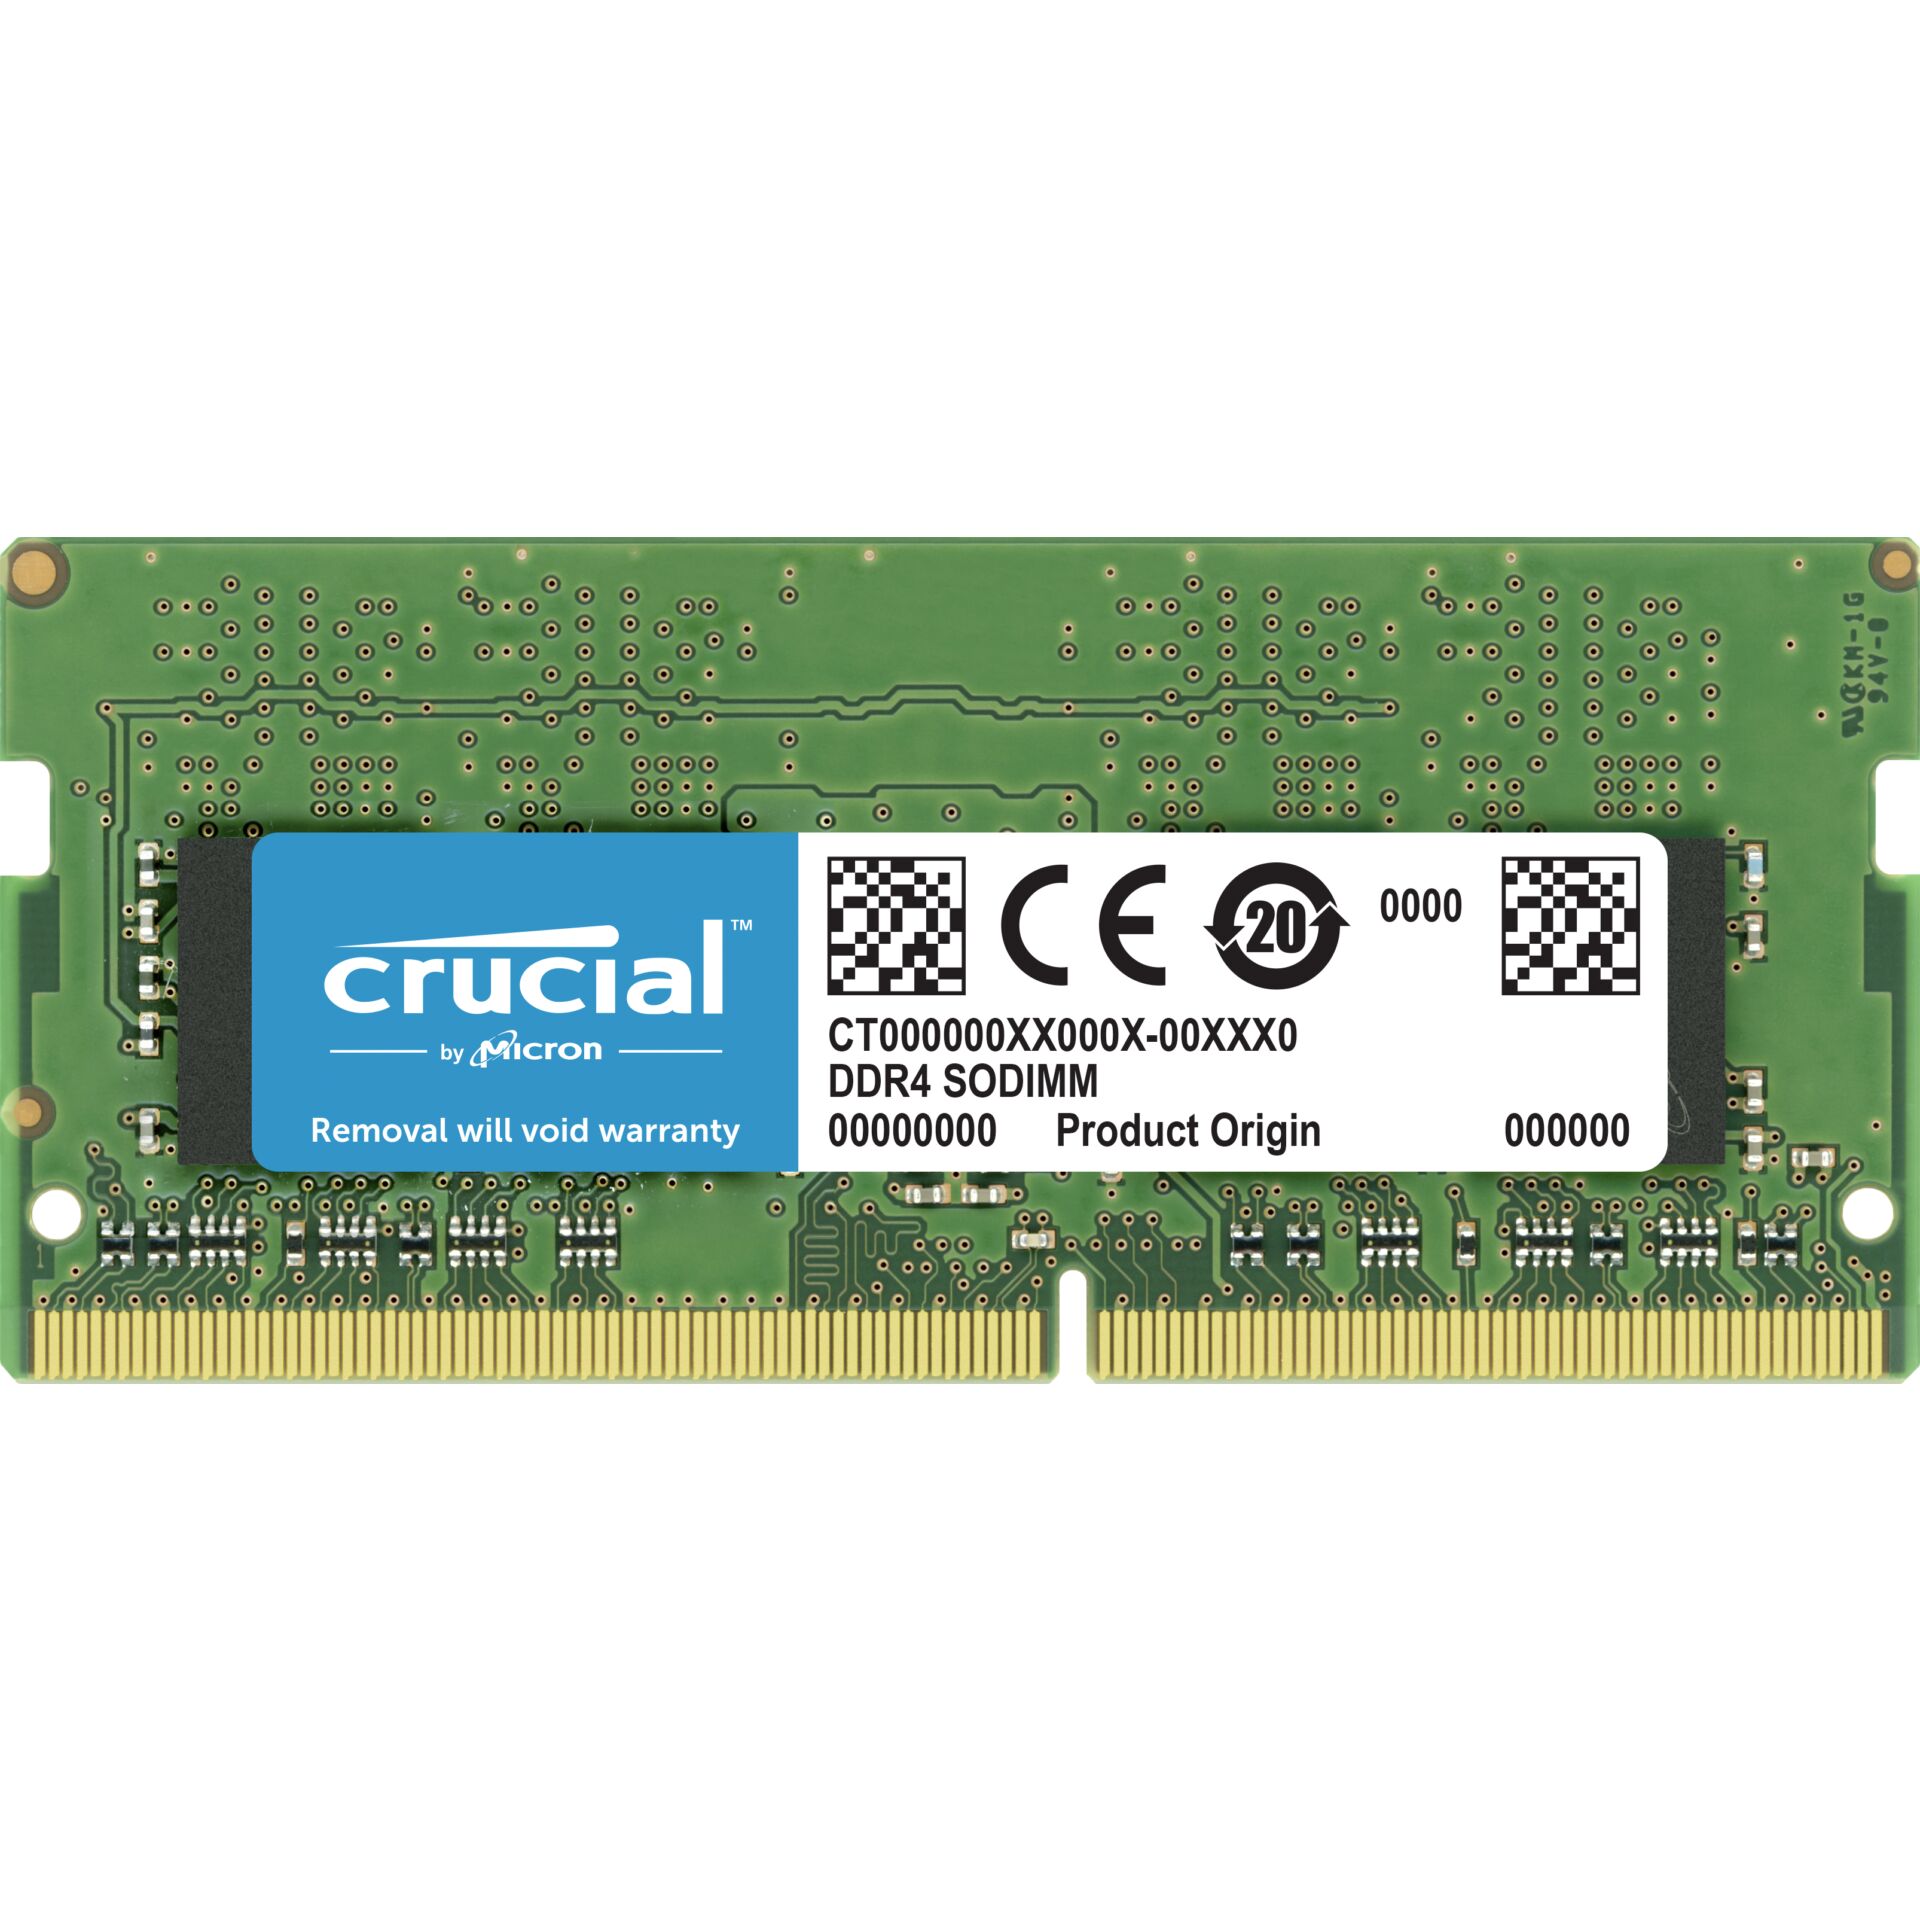 DDR4RAM 8GB DDR4-3200 Crucial SO-DIMM, CL22-22-22 